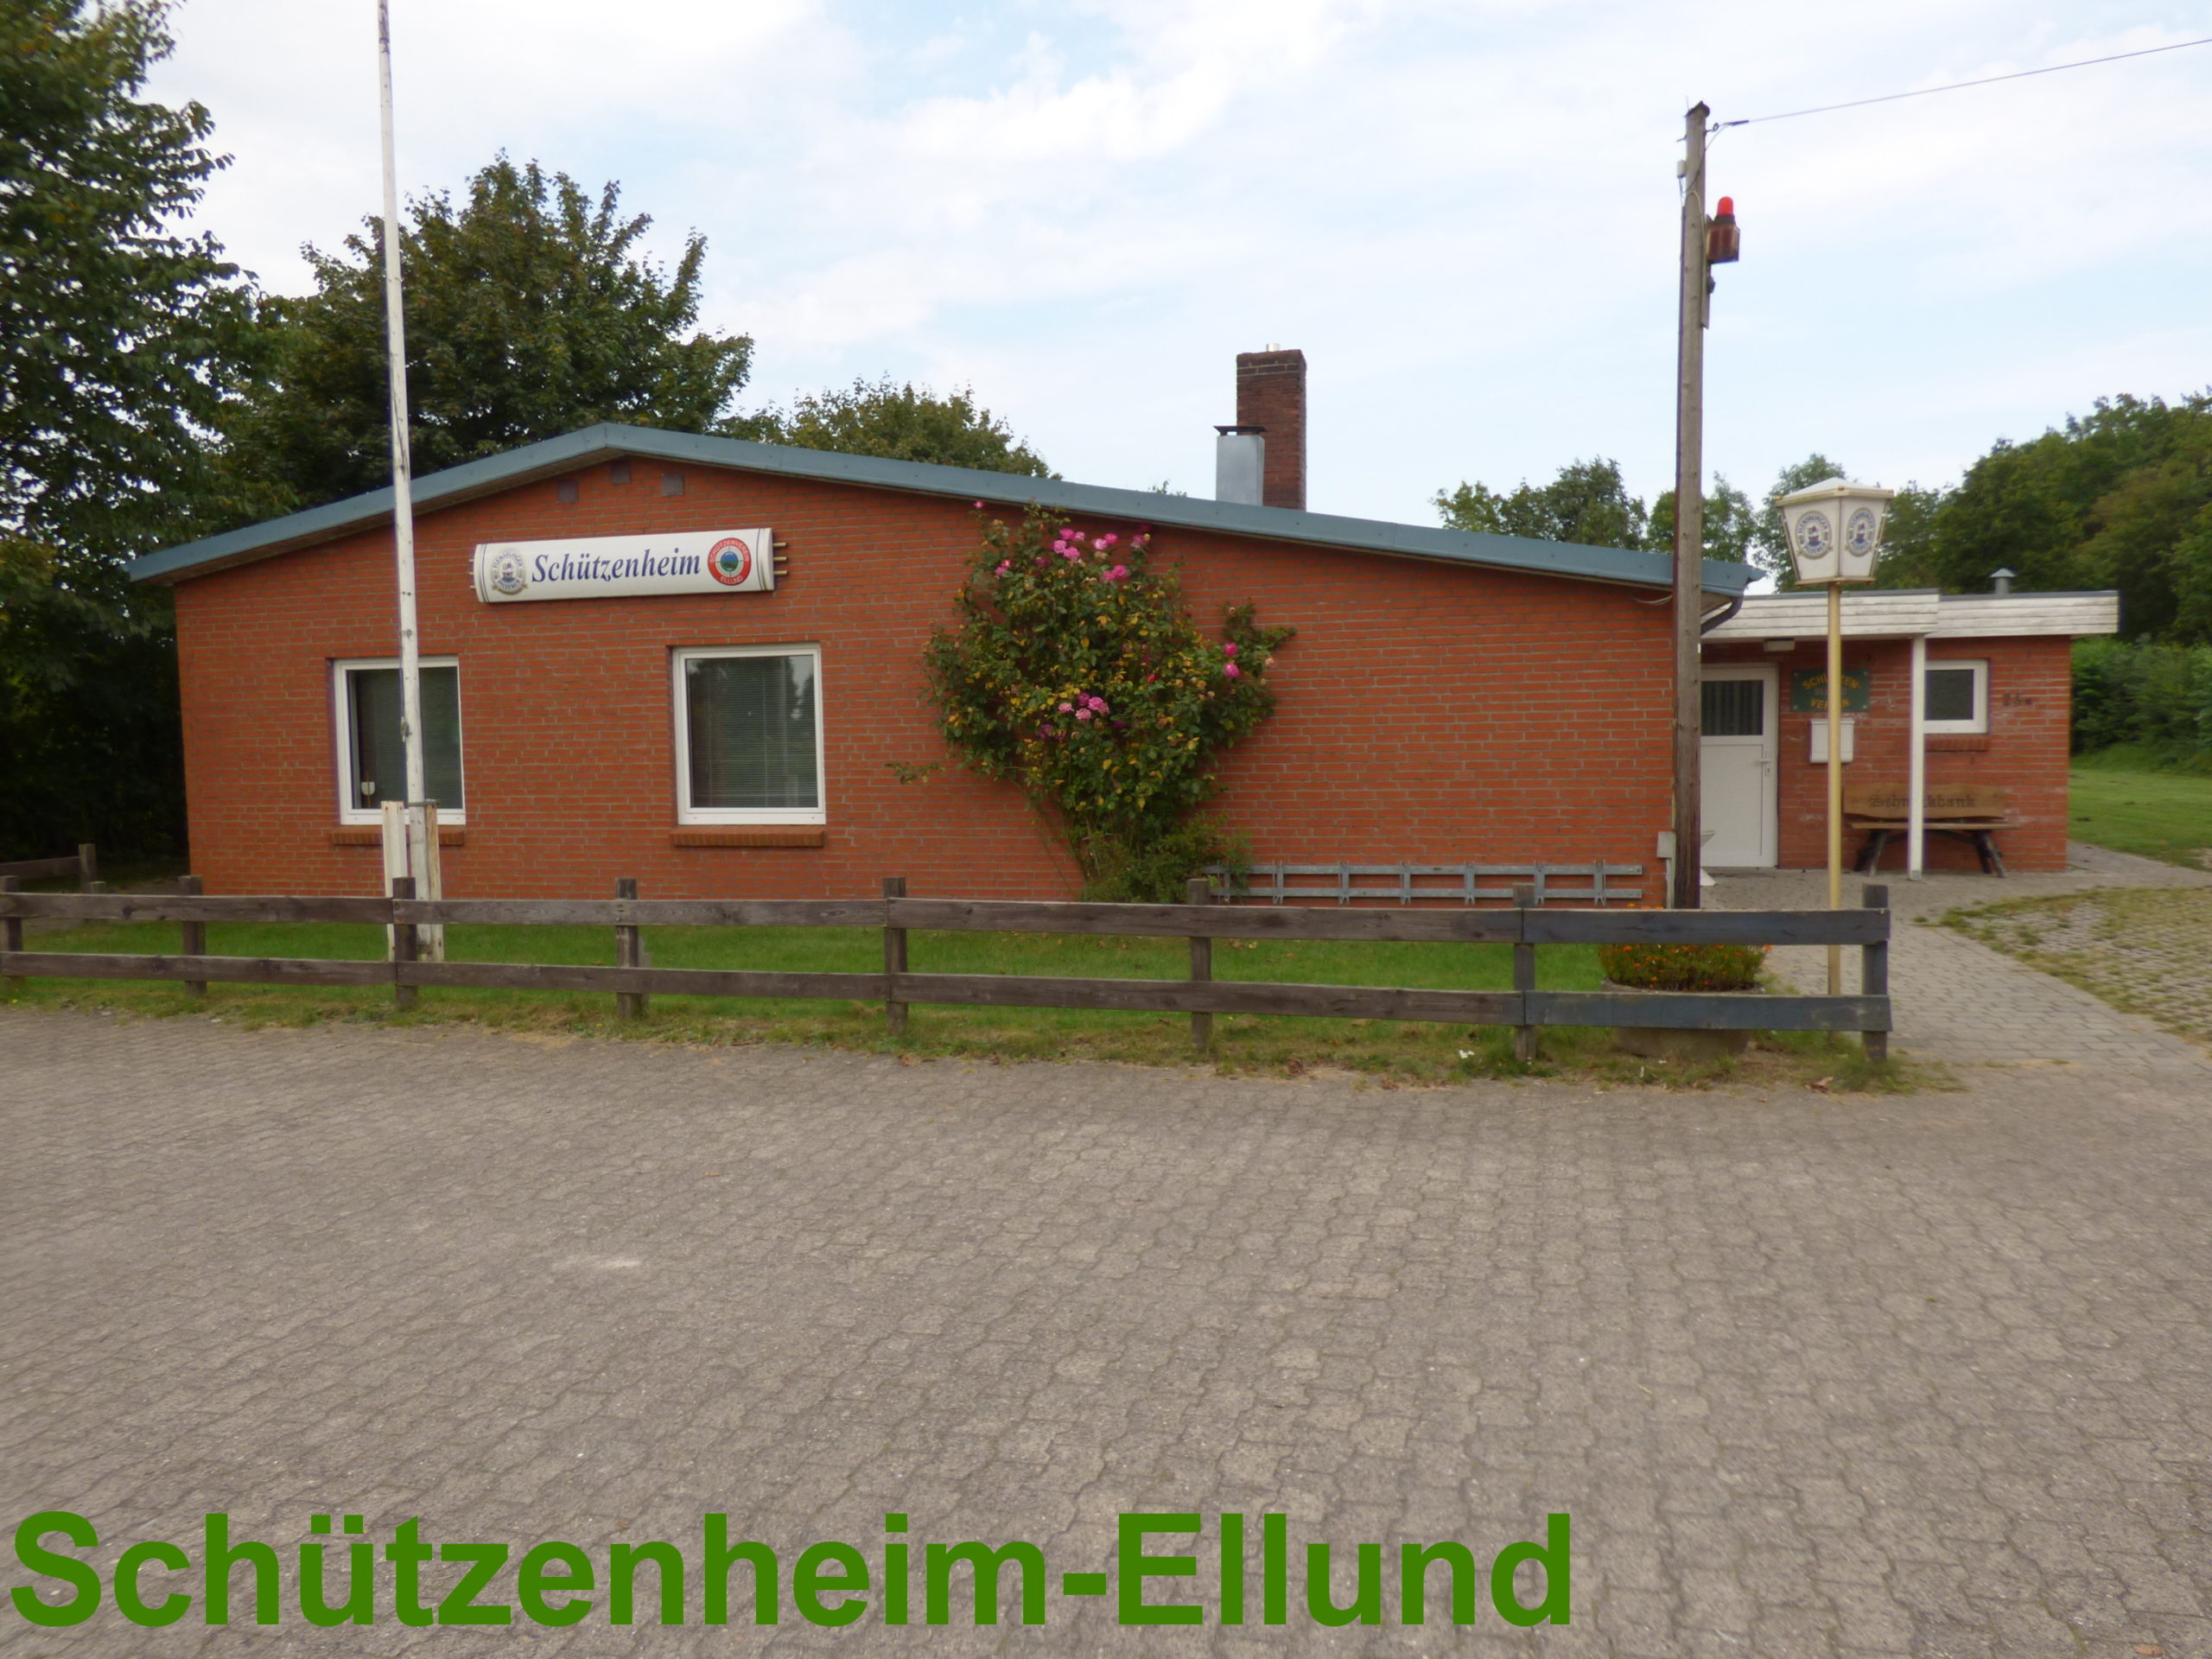 Schützenheim Ellund